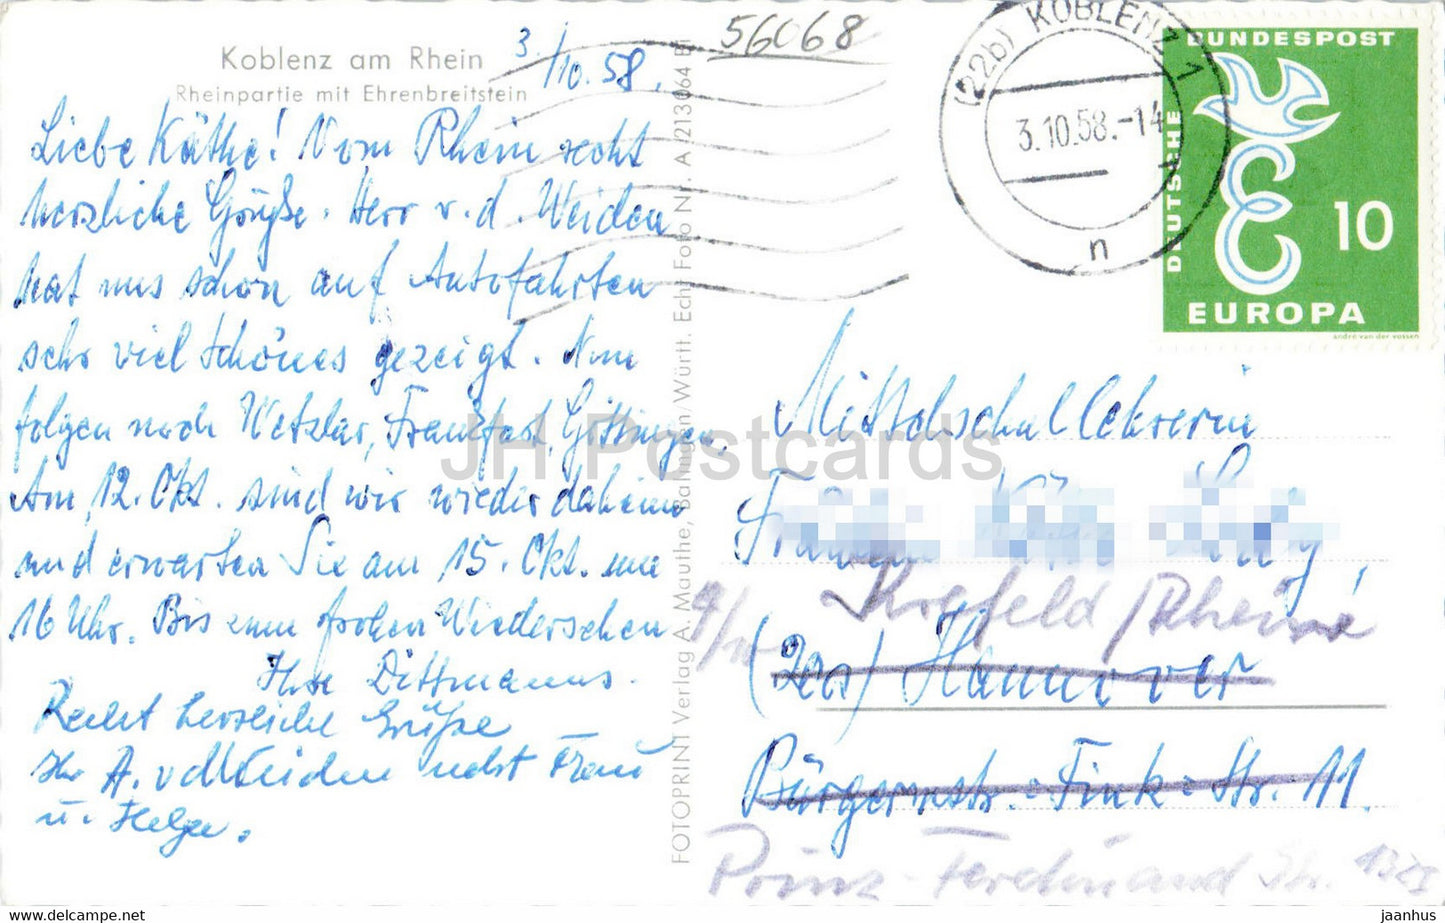 Koblenz am Rhein - Rheinpartie mit Ehrenbreitstein - Schiff - alte Postkarte - 1958 - Deutschland - gebraucht